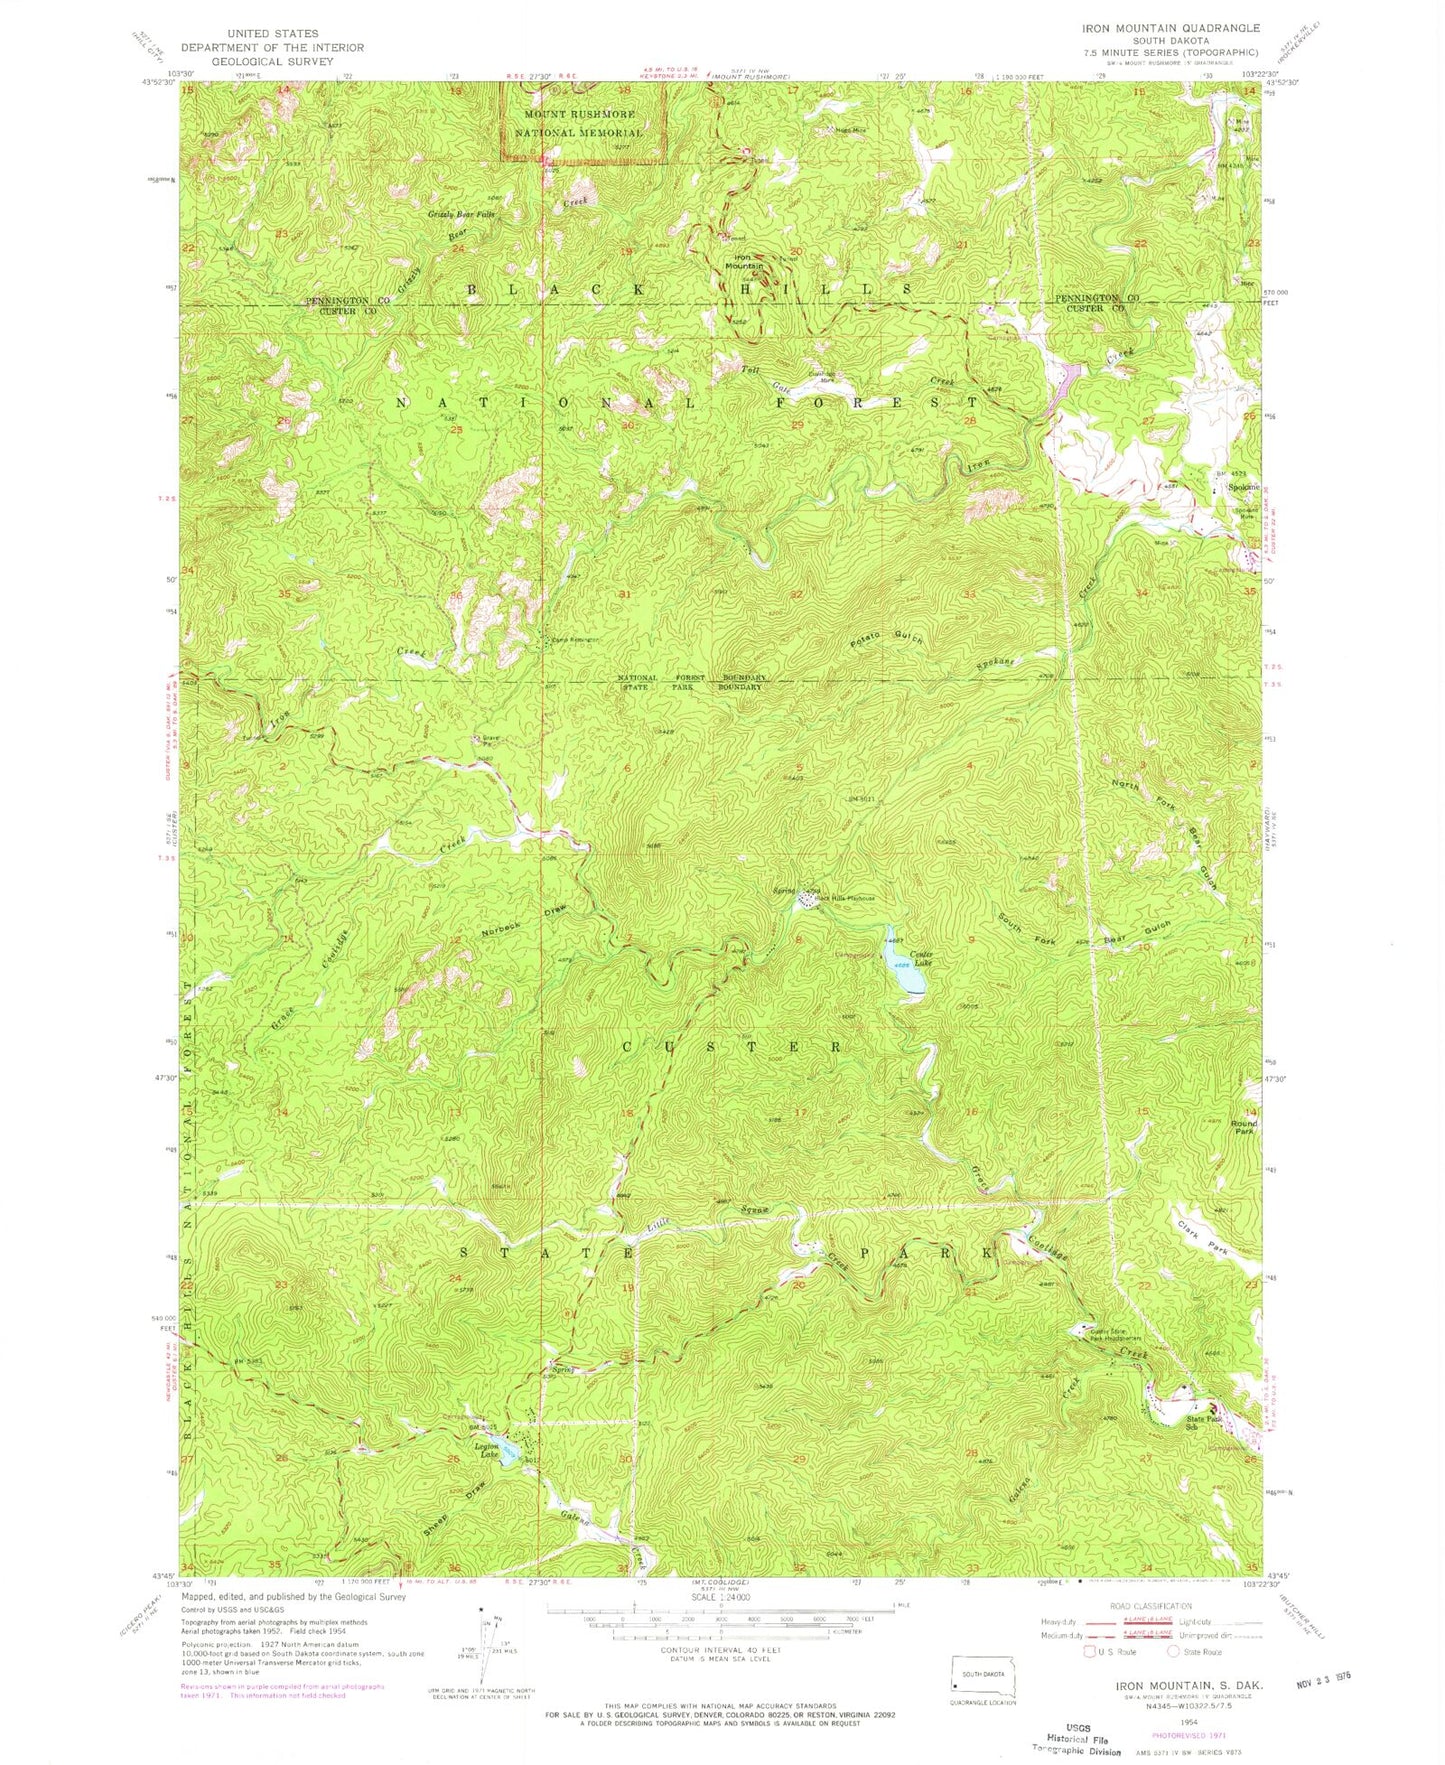 Classic USGS Iron Mountain South Dakota 7.5'x7.5' Topo Map Image